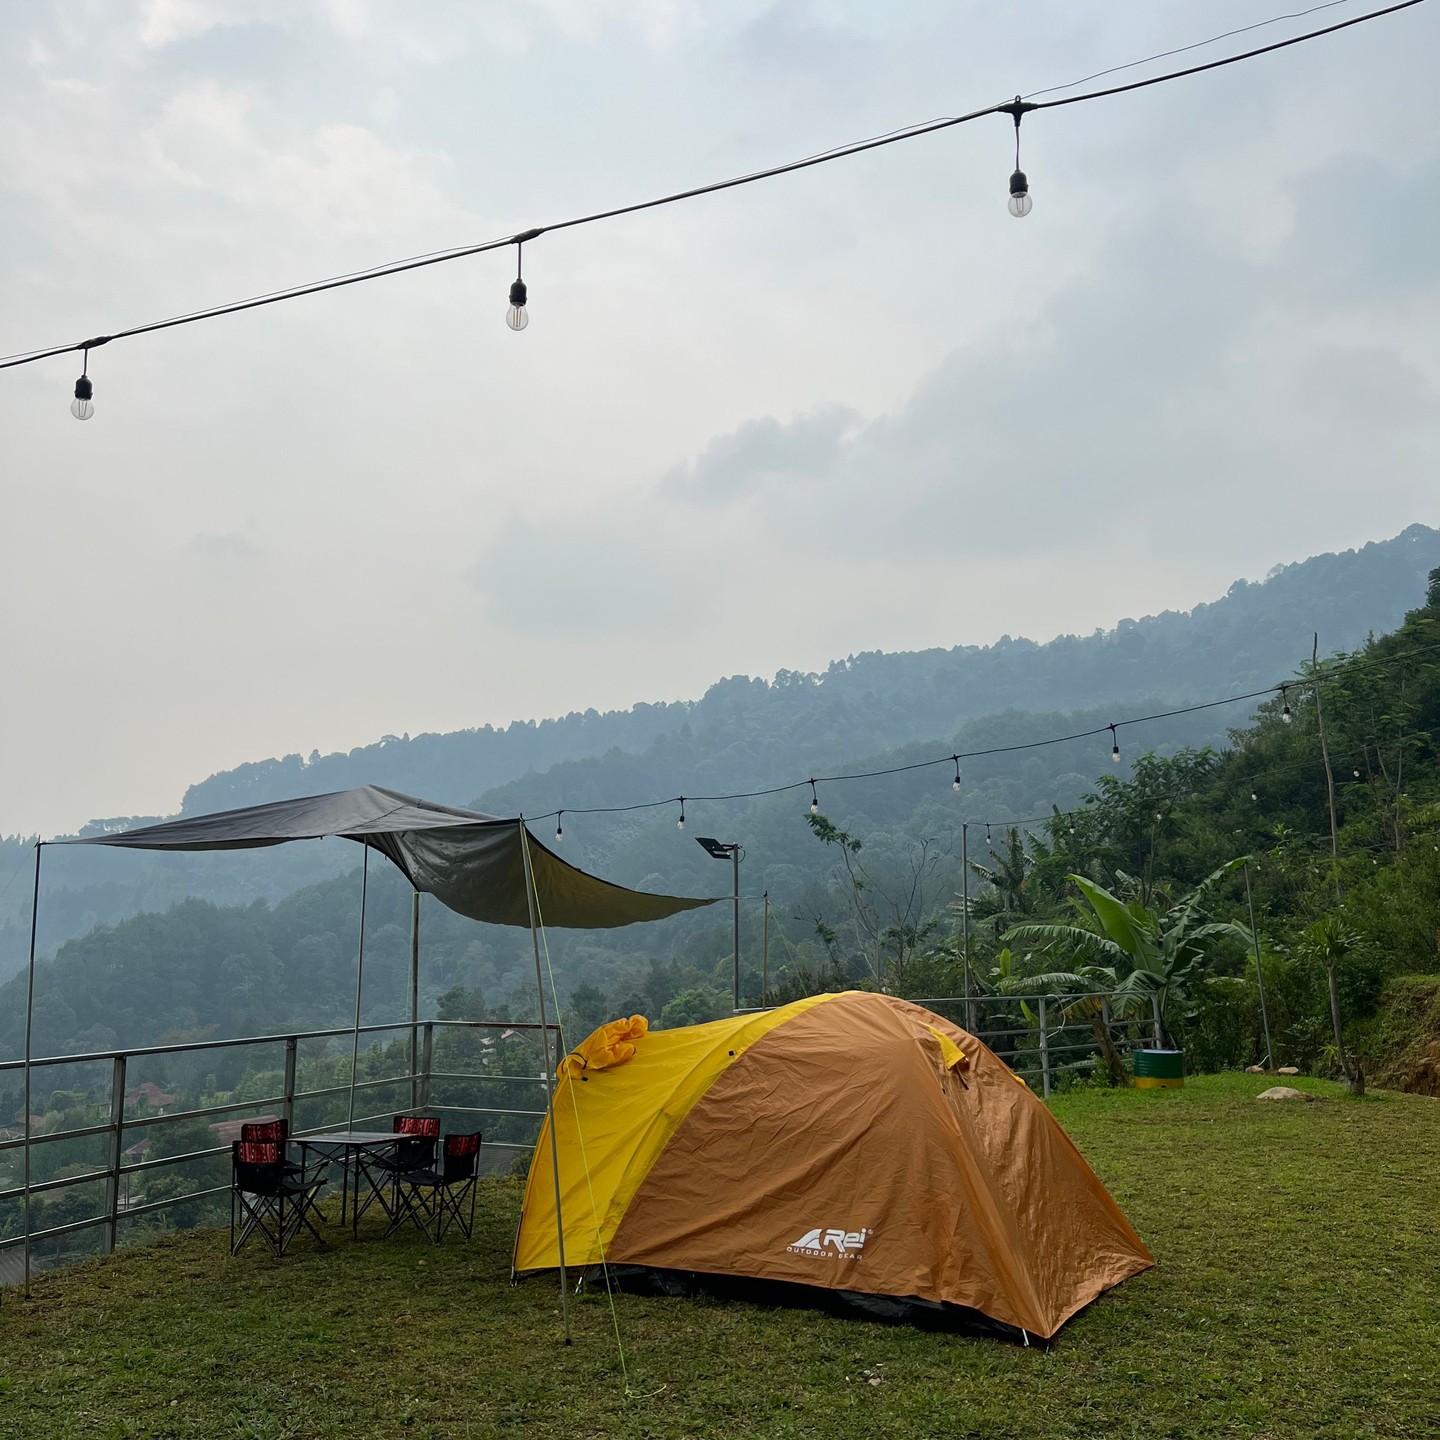 Harga Paseban Mountain View Camping Ground Image From @pasebanmountainview